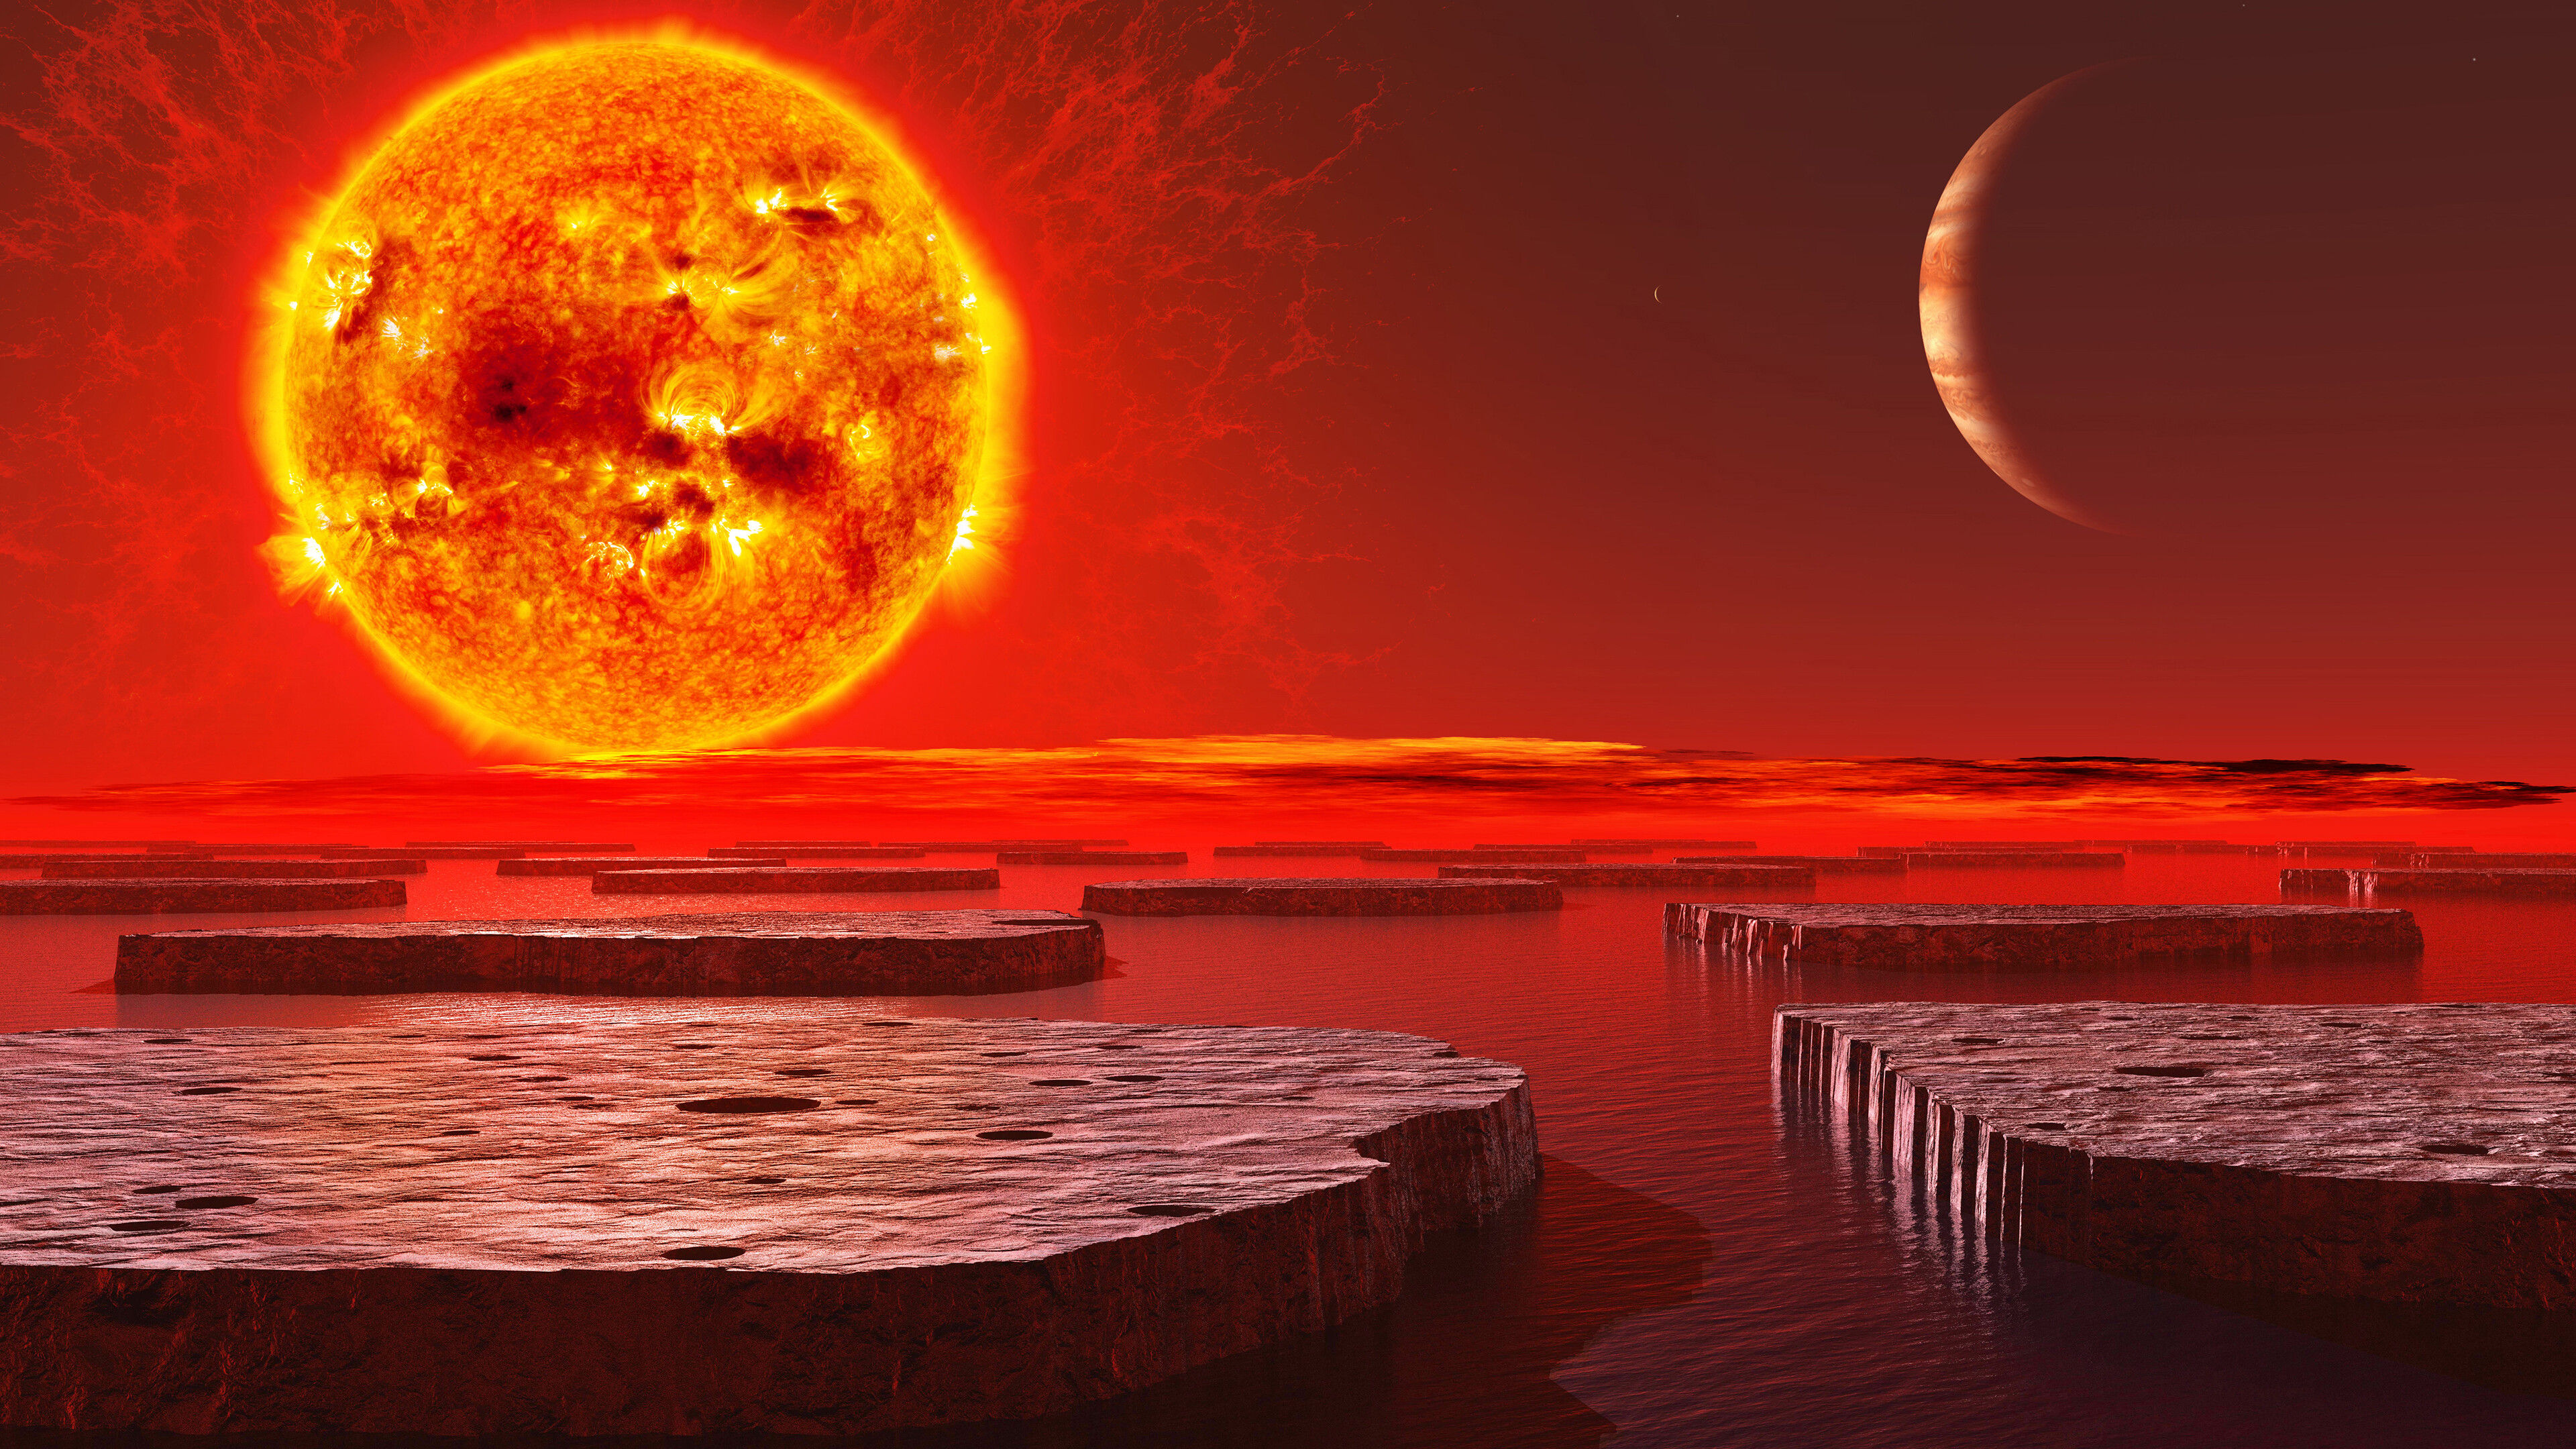 Orange planet, Cosmic wonder, Mesmerizing backdrop, Celestial beauty, 3840x2160 4K Desktop